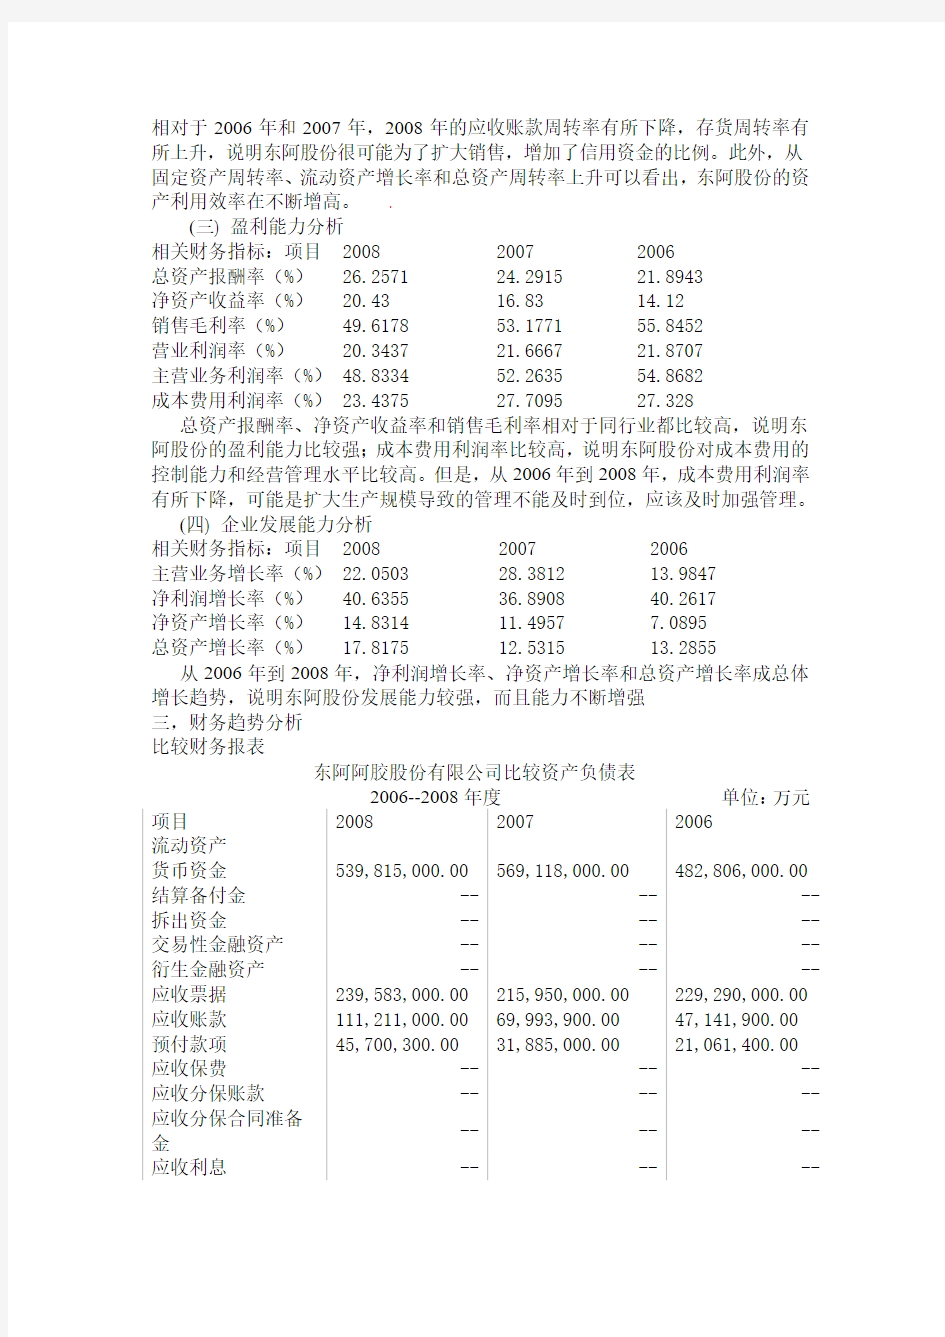 东阿阿胶股份有限公司2008年财务分析报告